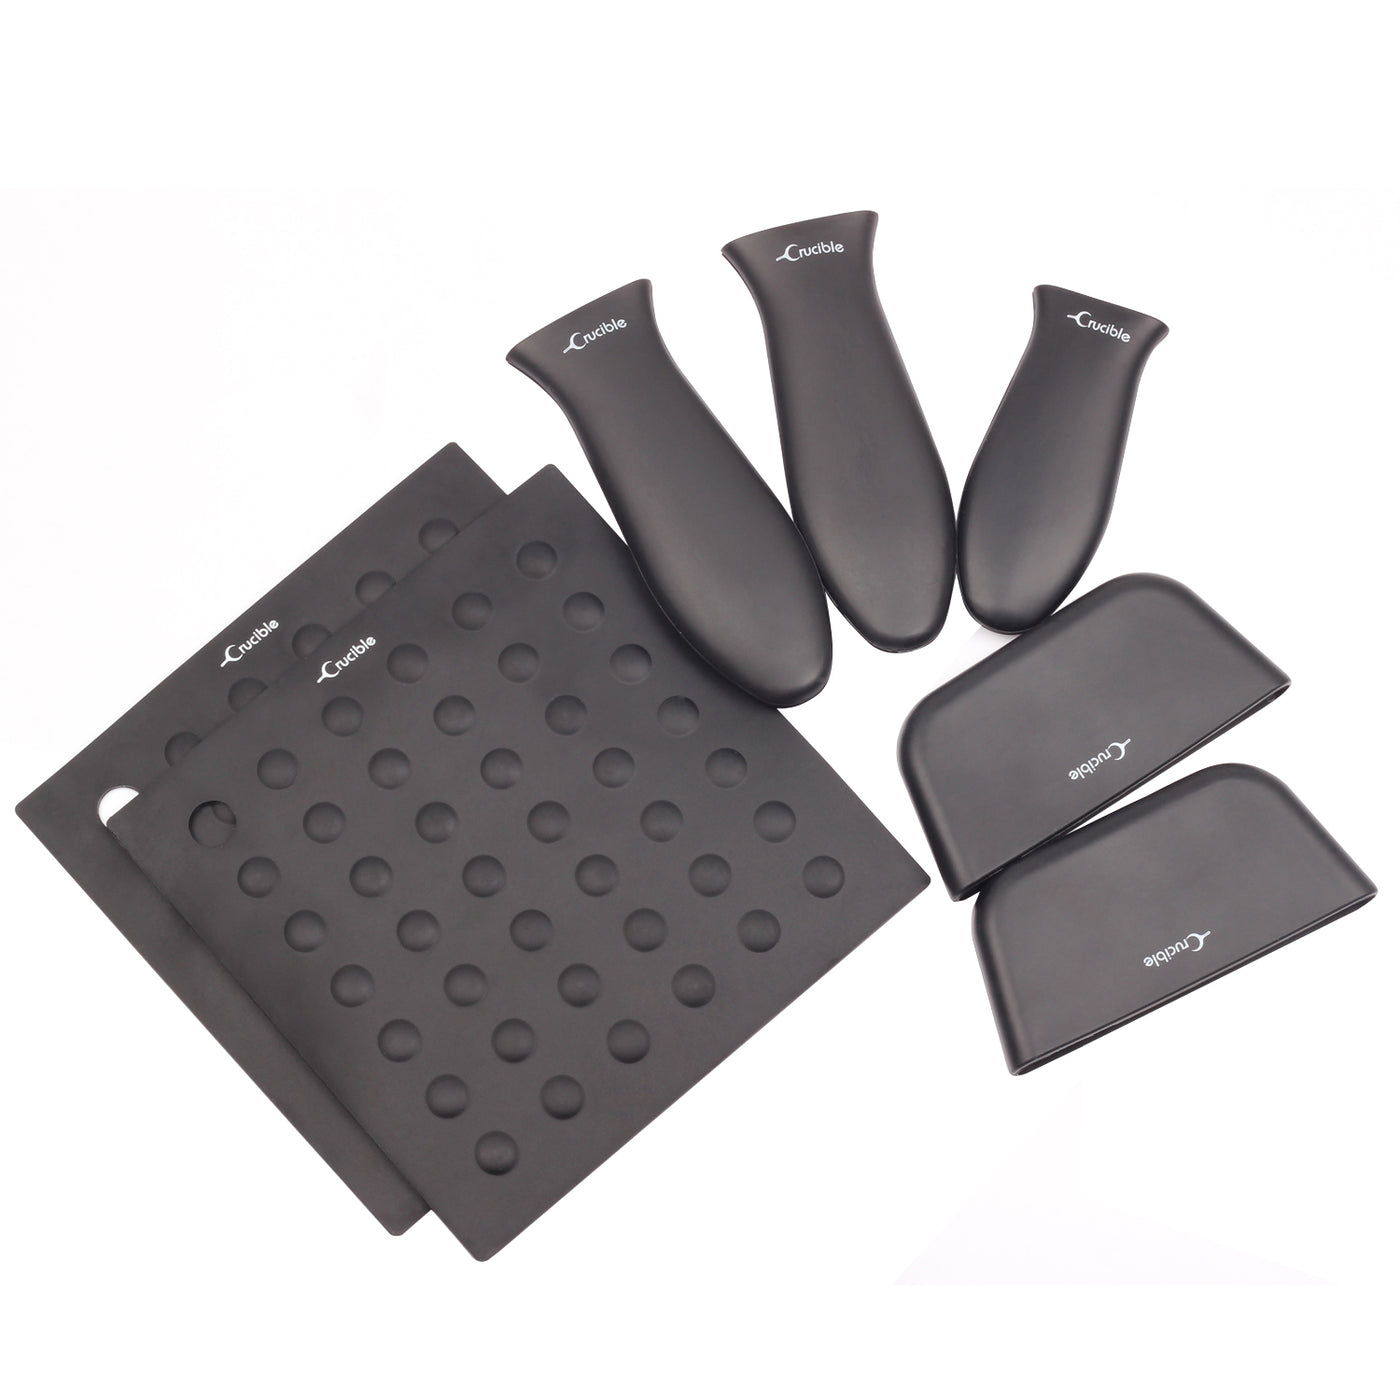 Silikon-Topflappen (7er-Pack Mix Black) für Gusseisenpfannen und mehr